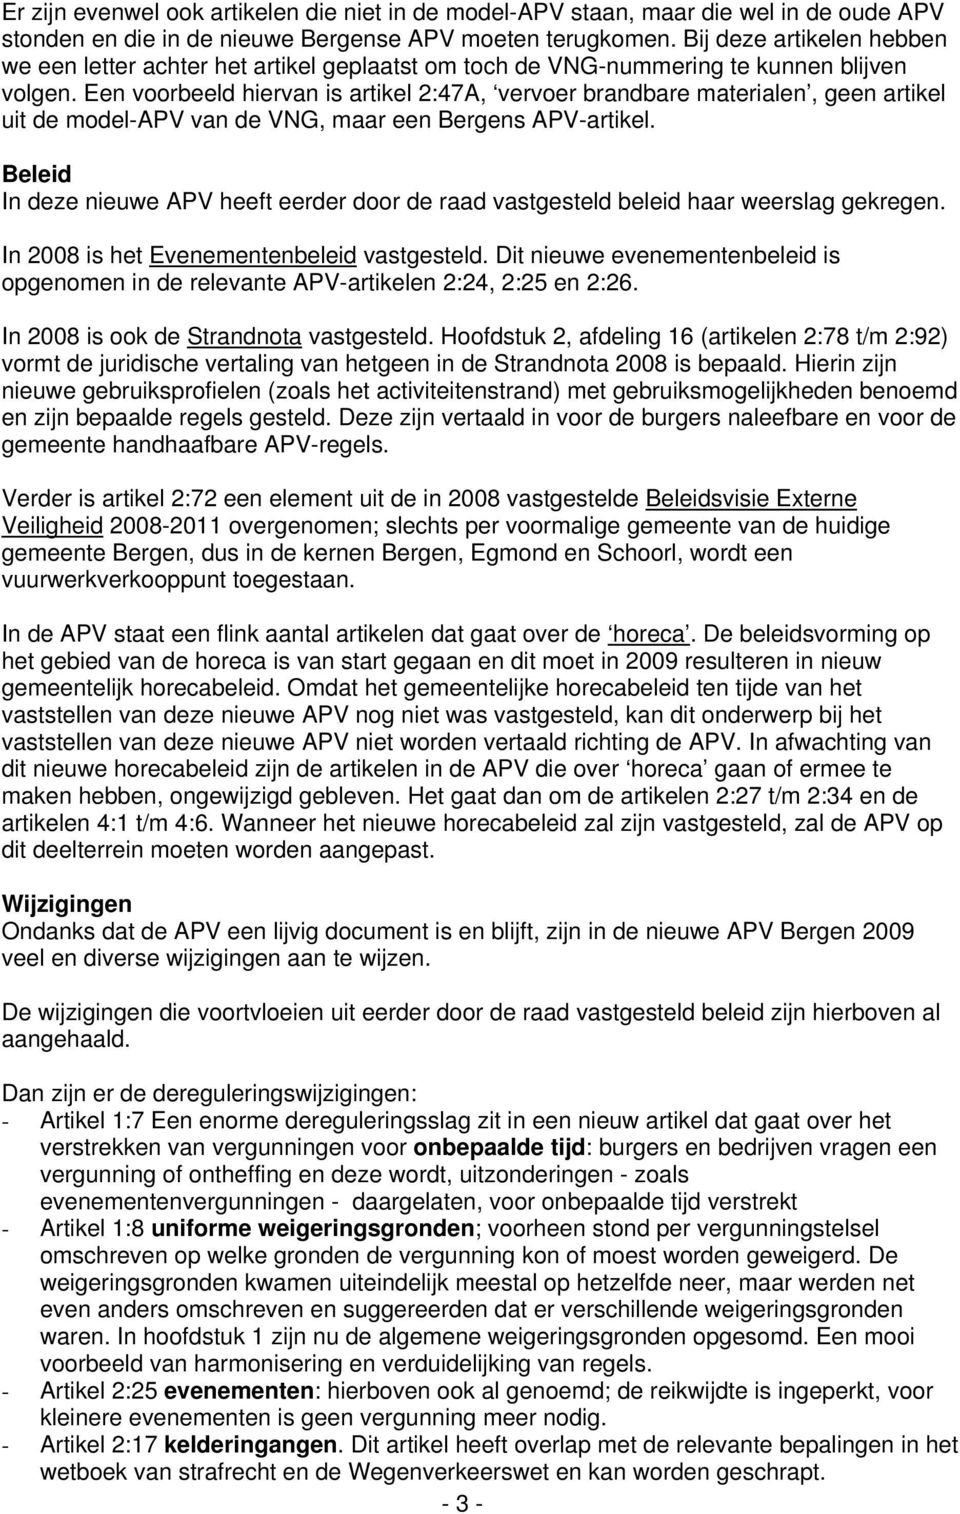 Een voorbeeld hiervan is artikel 2:47A, vervoer brandbare materialen, geen artikel uit de model-apv van de VNG, maar een Bergens APV-artikel.